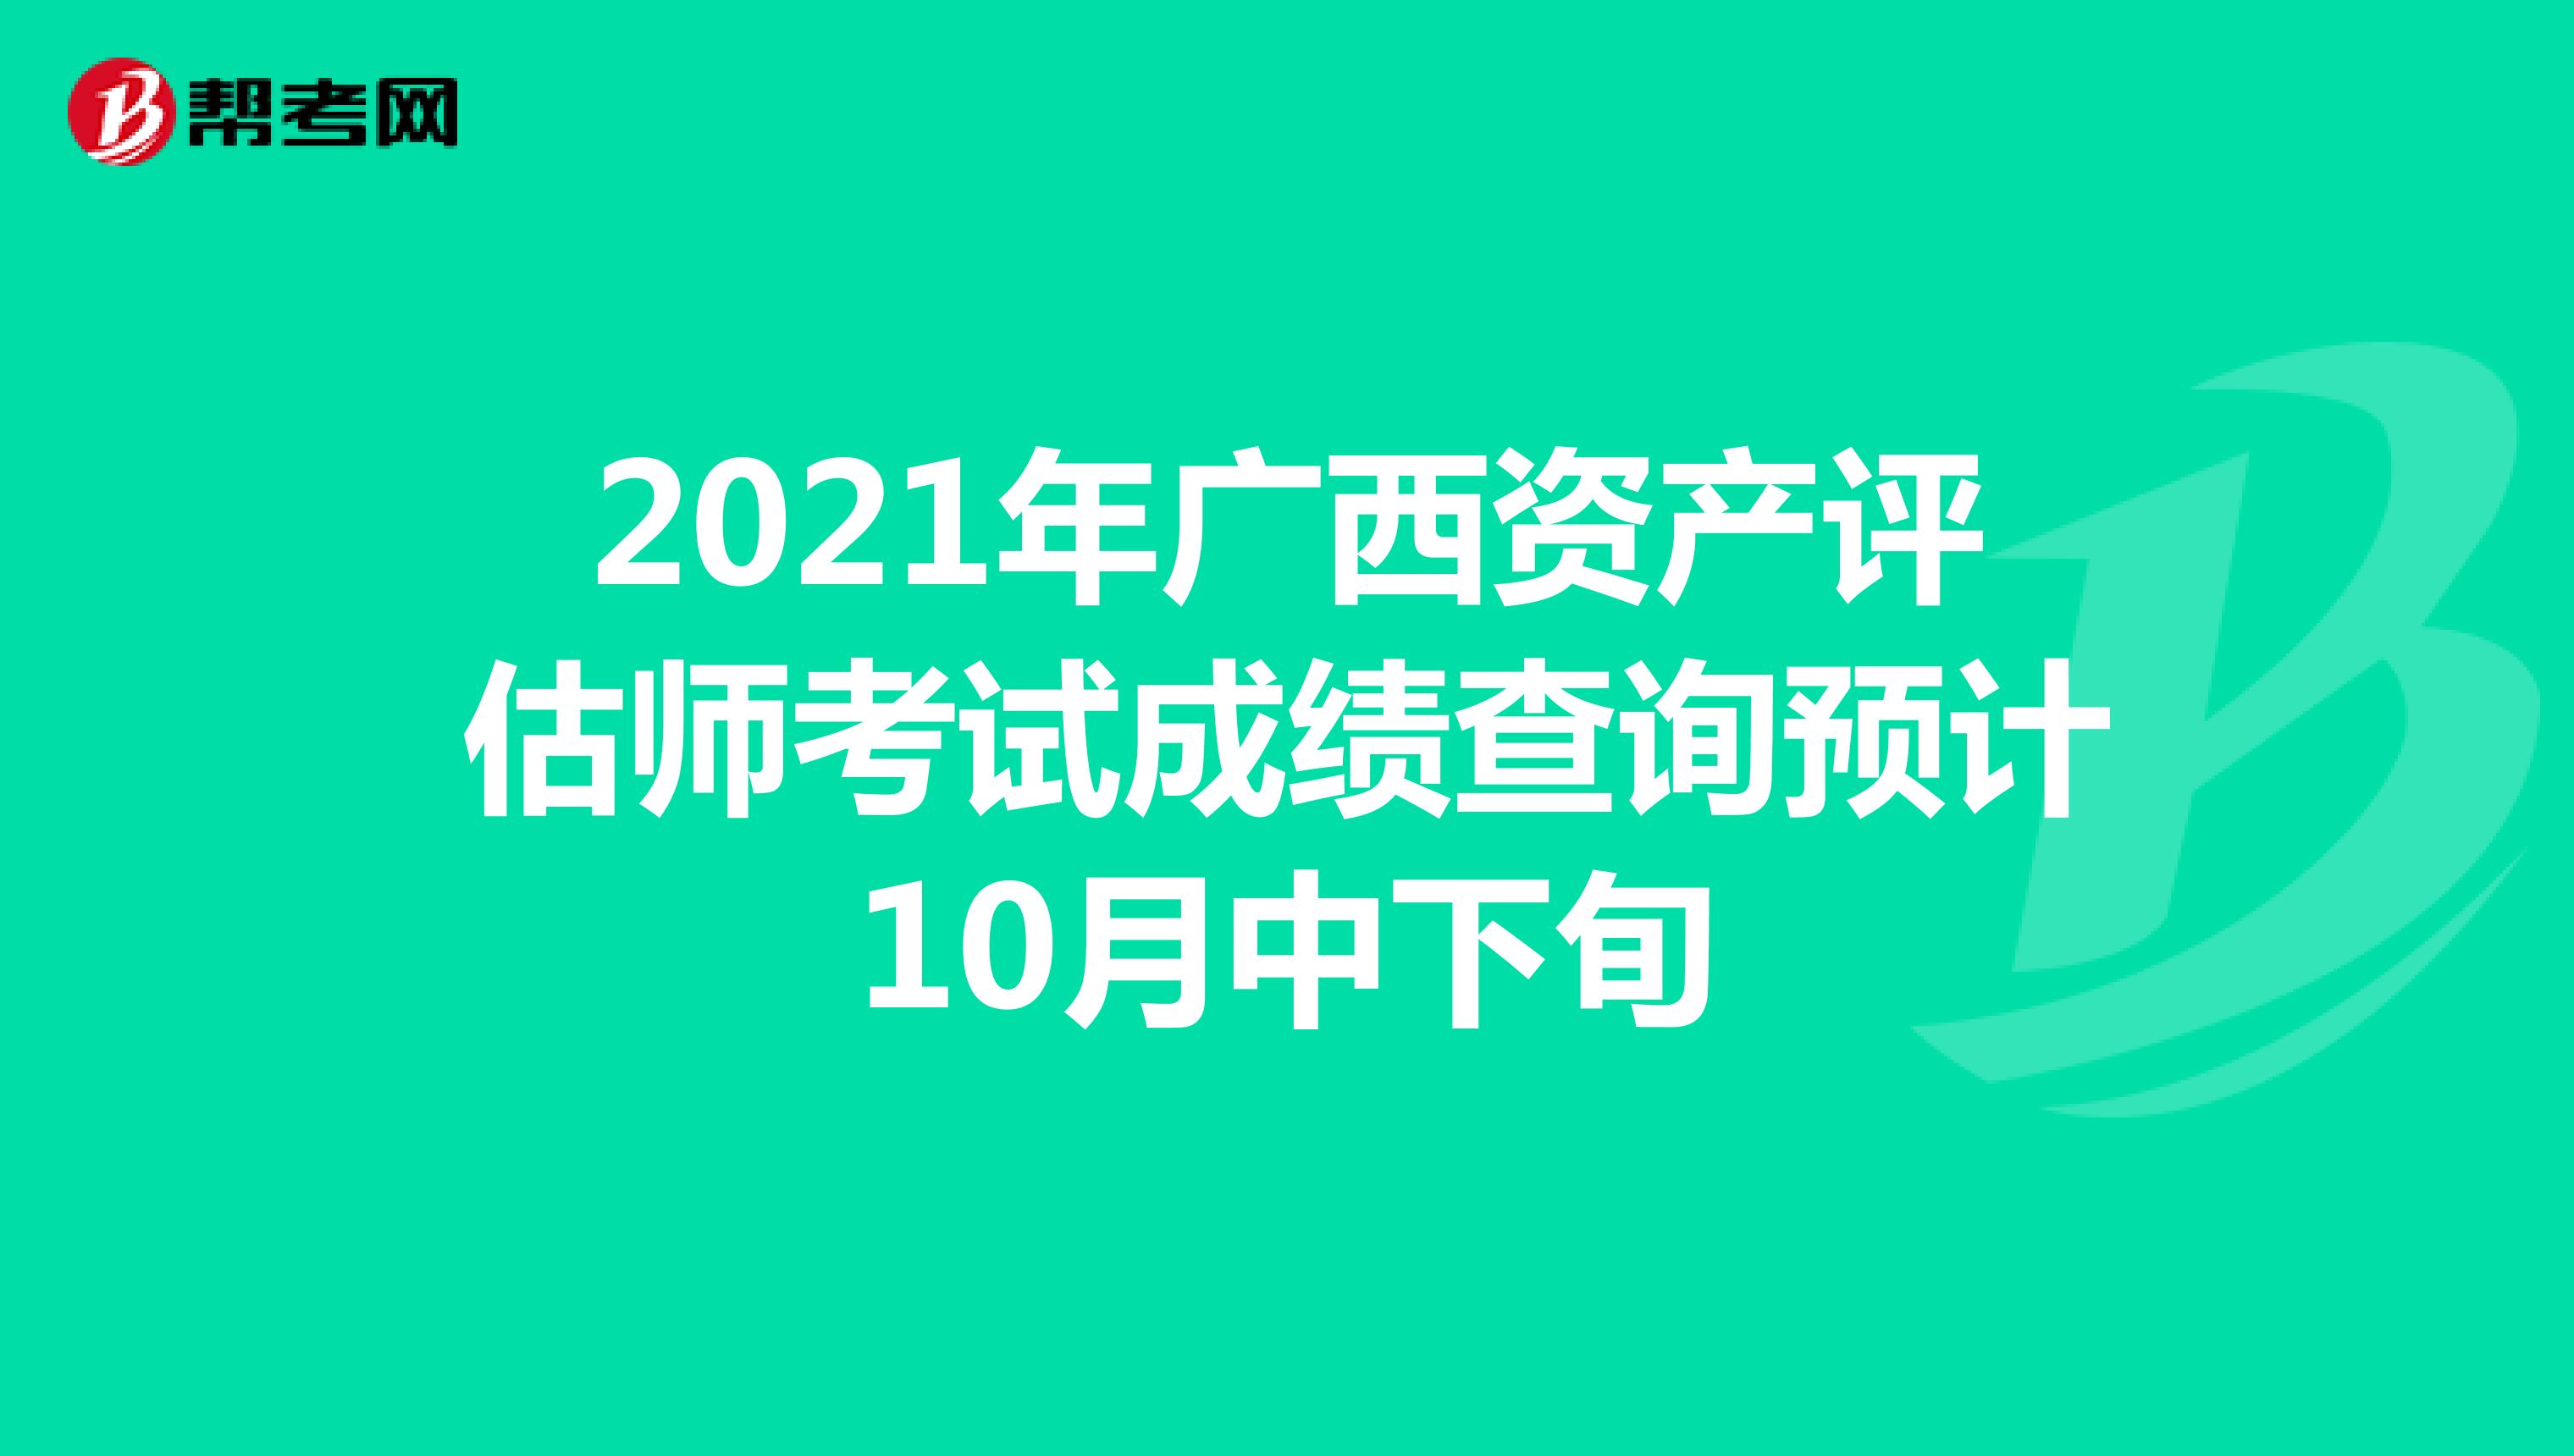 2021年广西资产评估师考试成绩查询预计10月中下旬